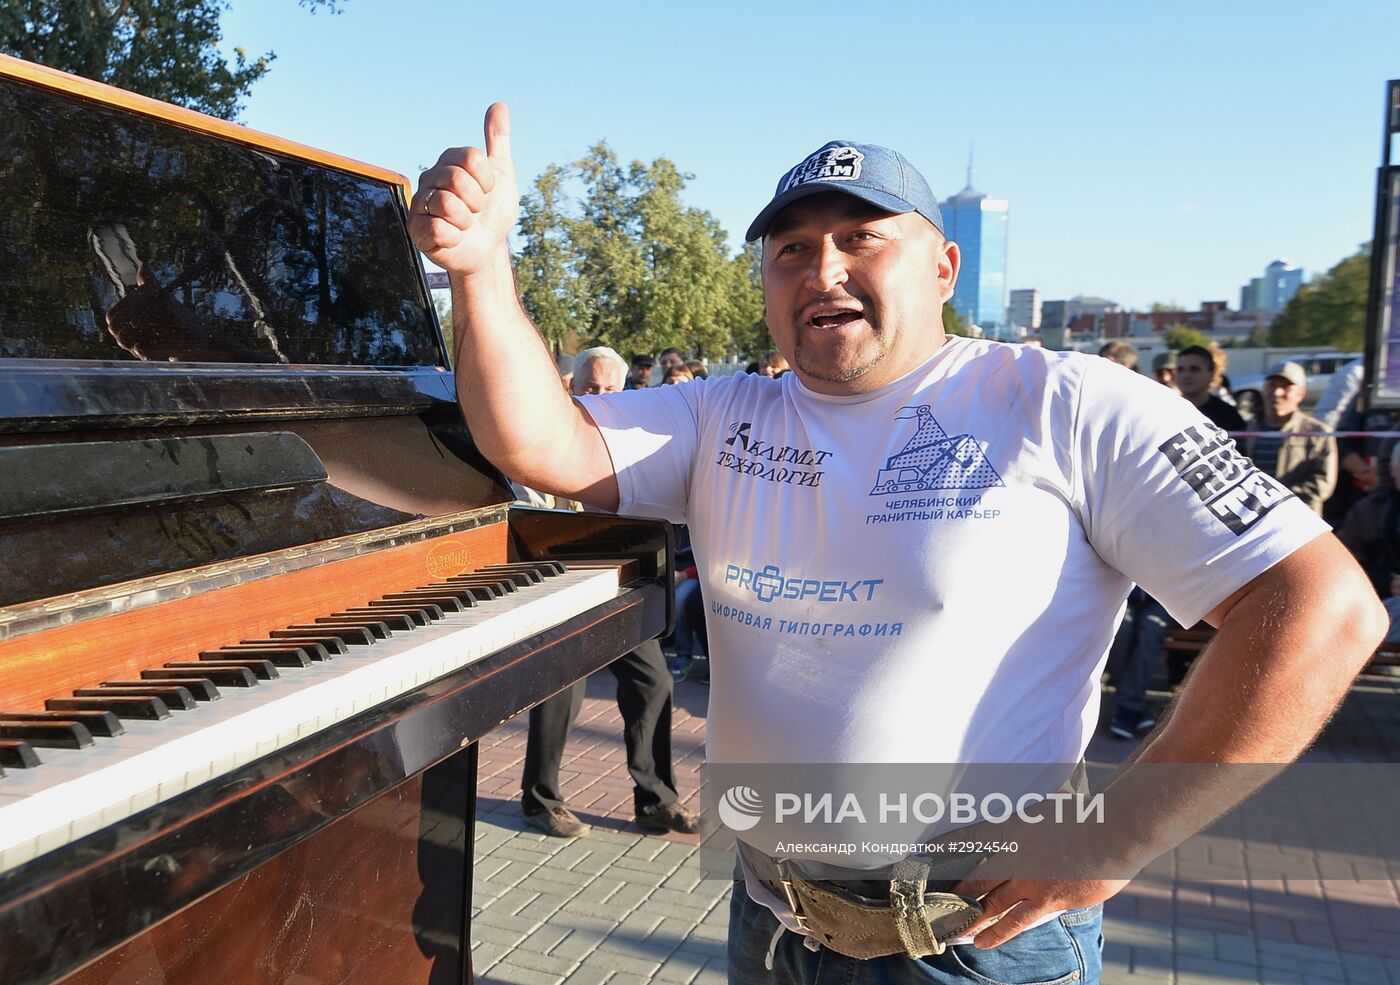 Челябинский силач Эльбрус Нигматуллин установил мировой рекорд